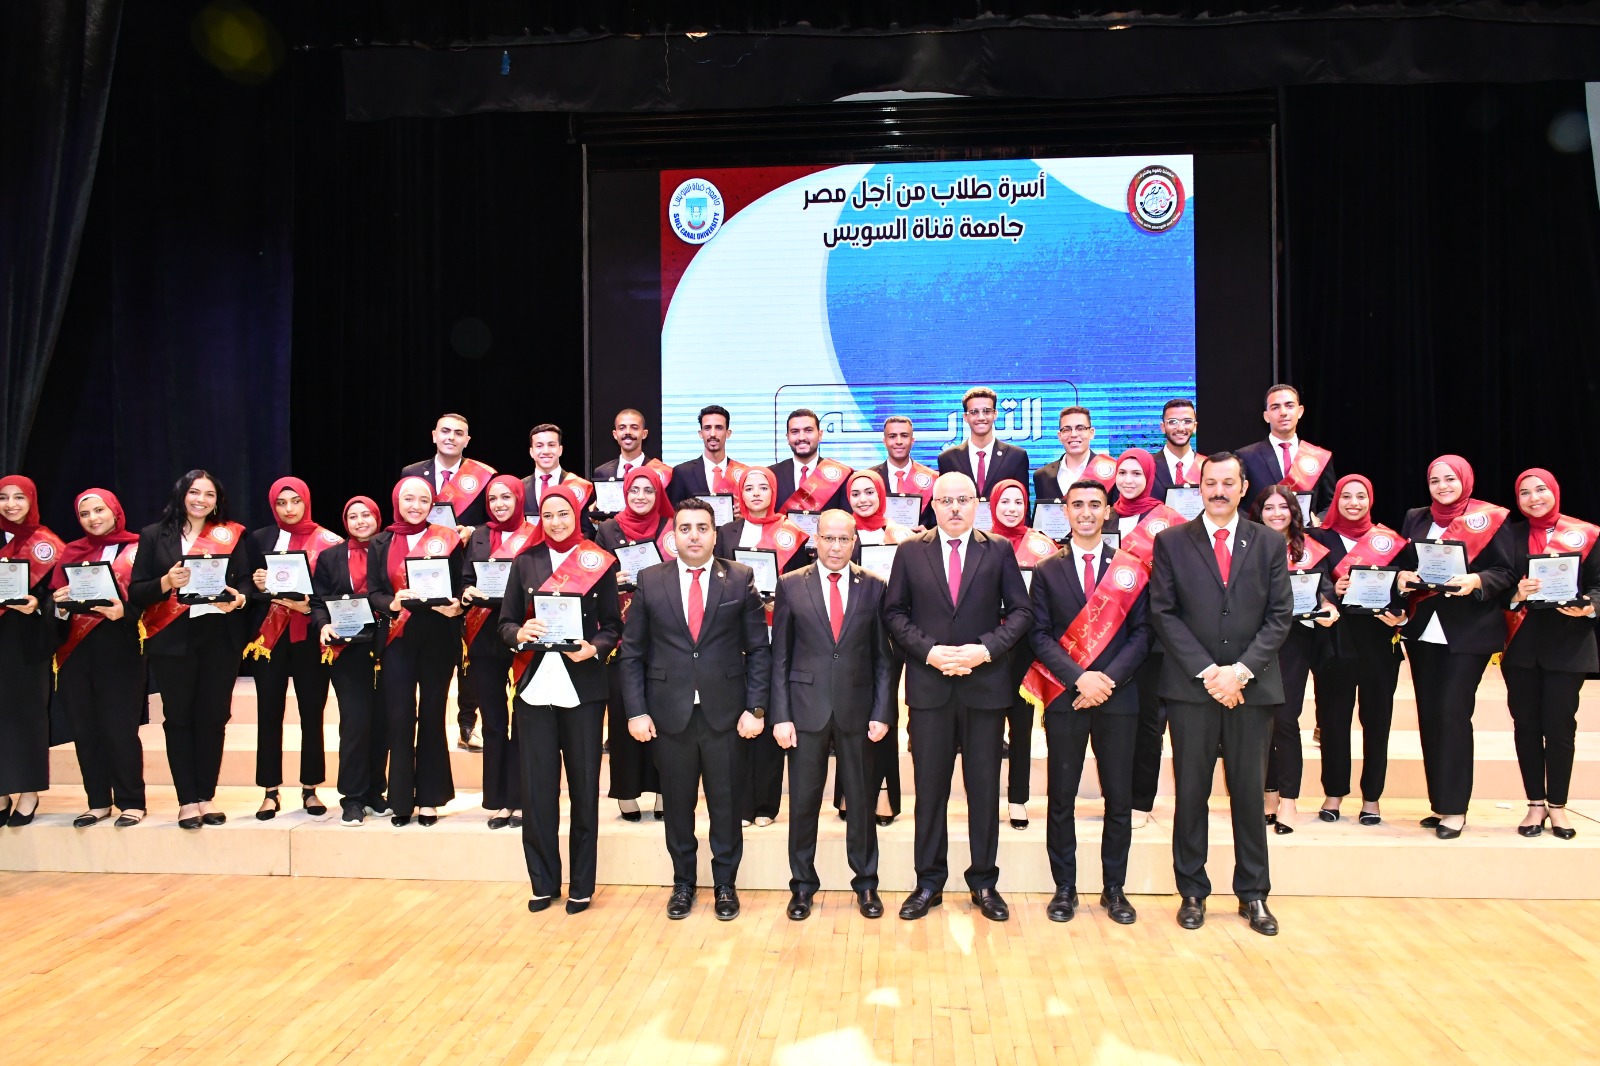 رئيس جامعة القناة يُشارك طلاب من أجل مصر احتفالهم بختام الأنشطة وتكريم المتميزين (1)